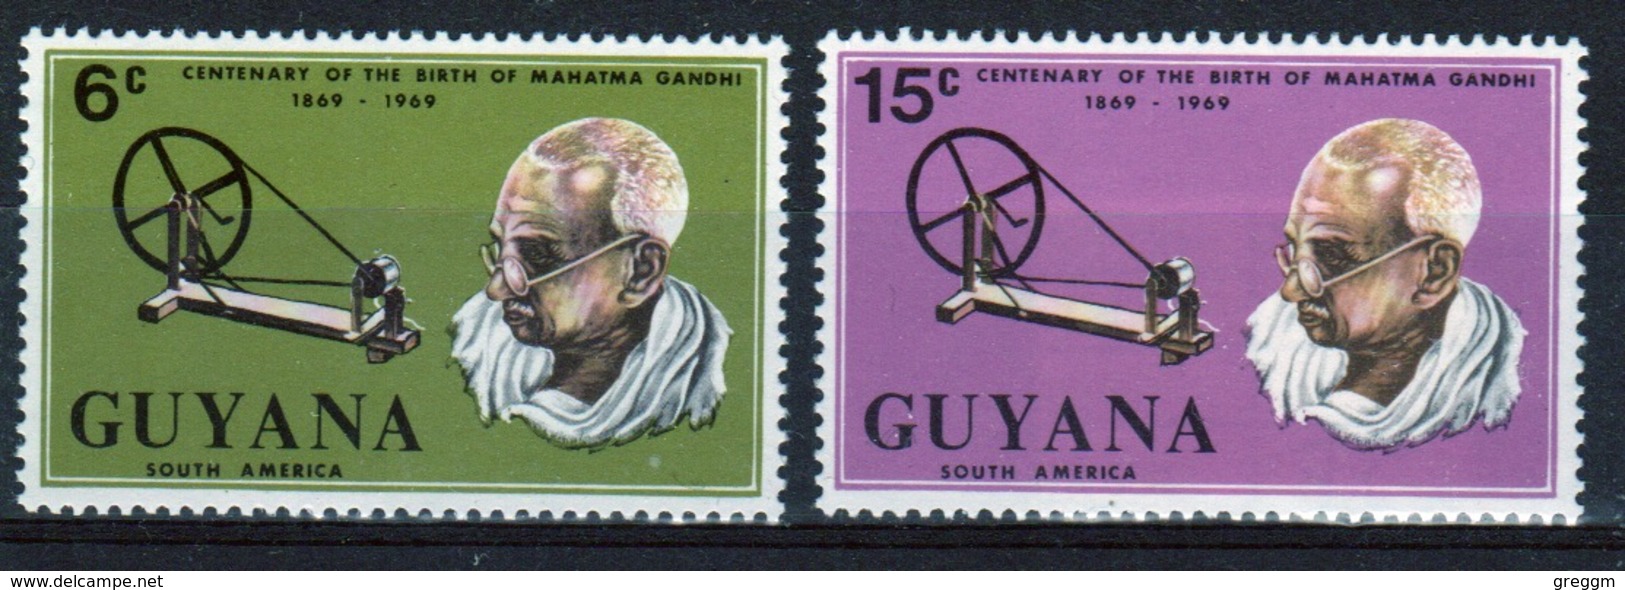 Guyana 1969 Set Of Stamps To Celebrate Birth Centenary Of Gandhi. - Guyana (1966-...)